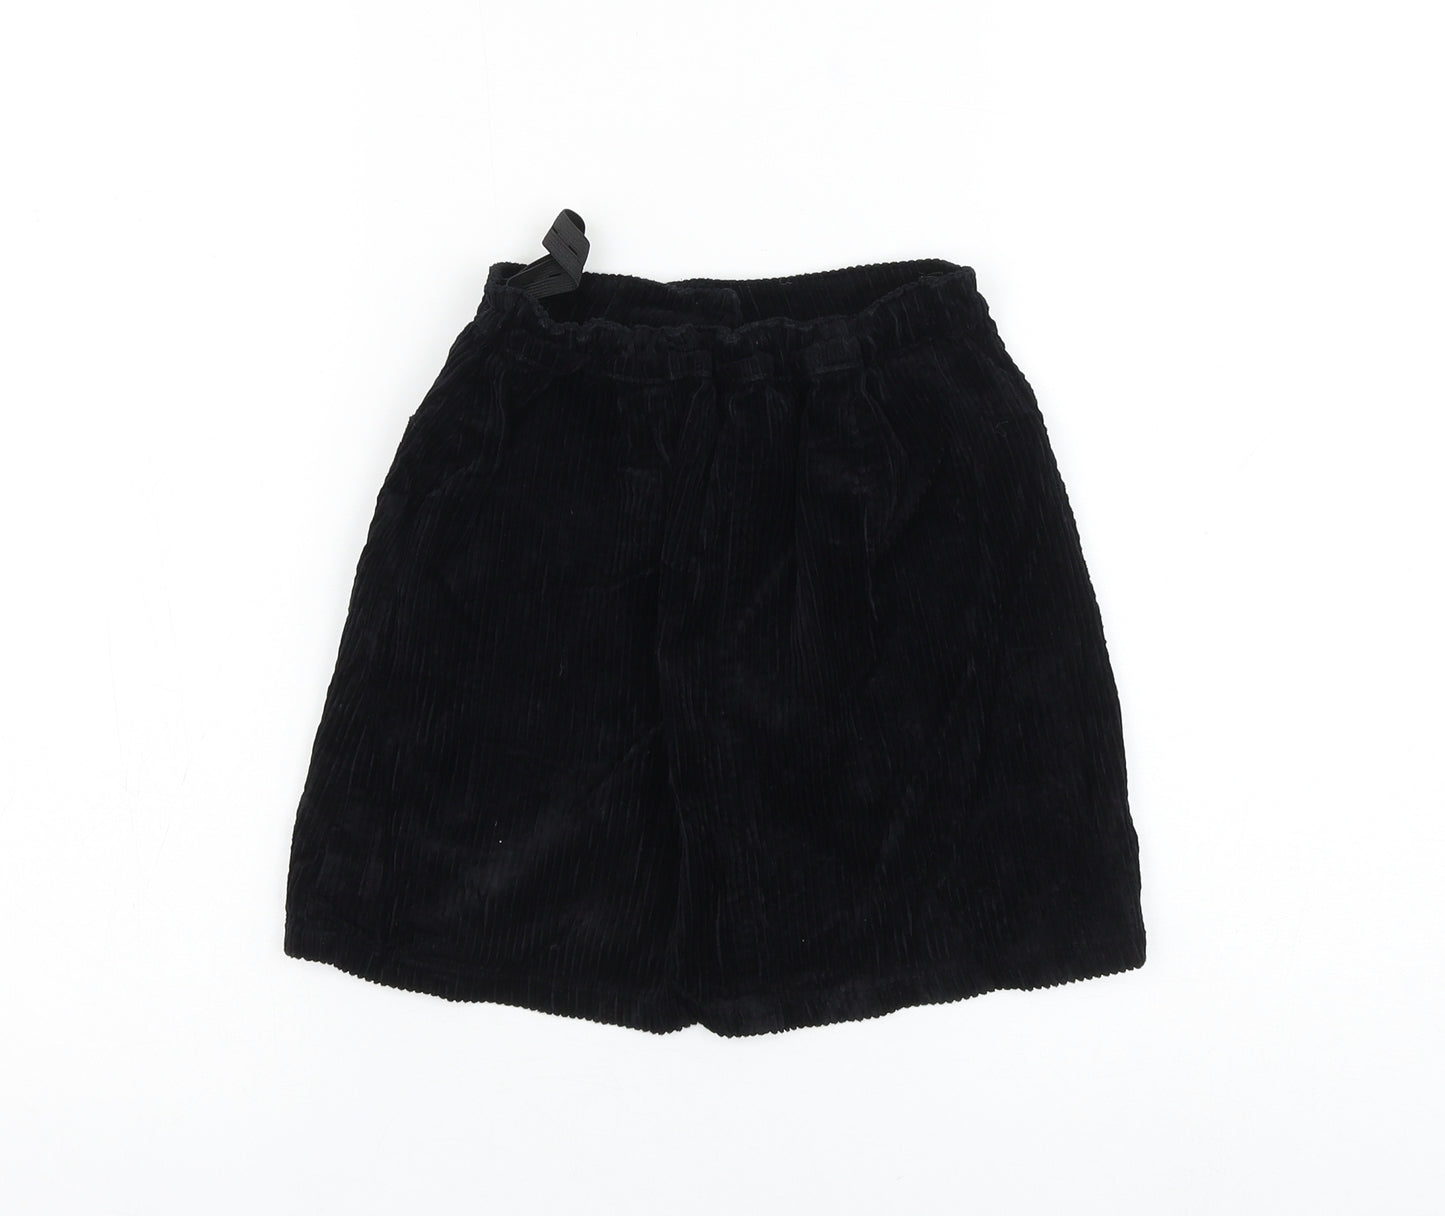 NEXT Girls Black Cotton A-Line Skirt Size 10 Years Regular Button